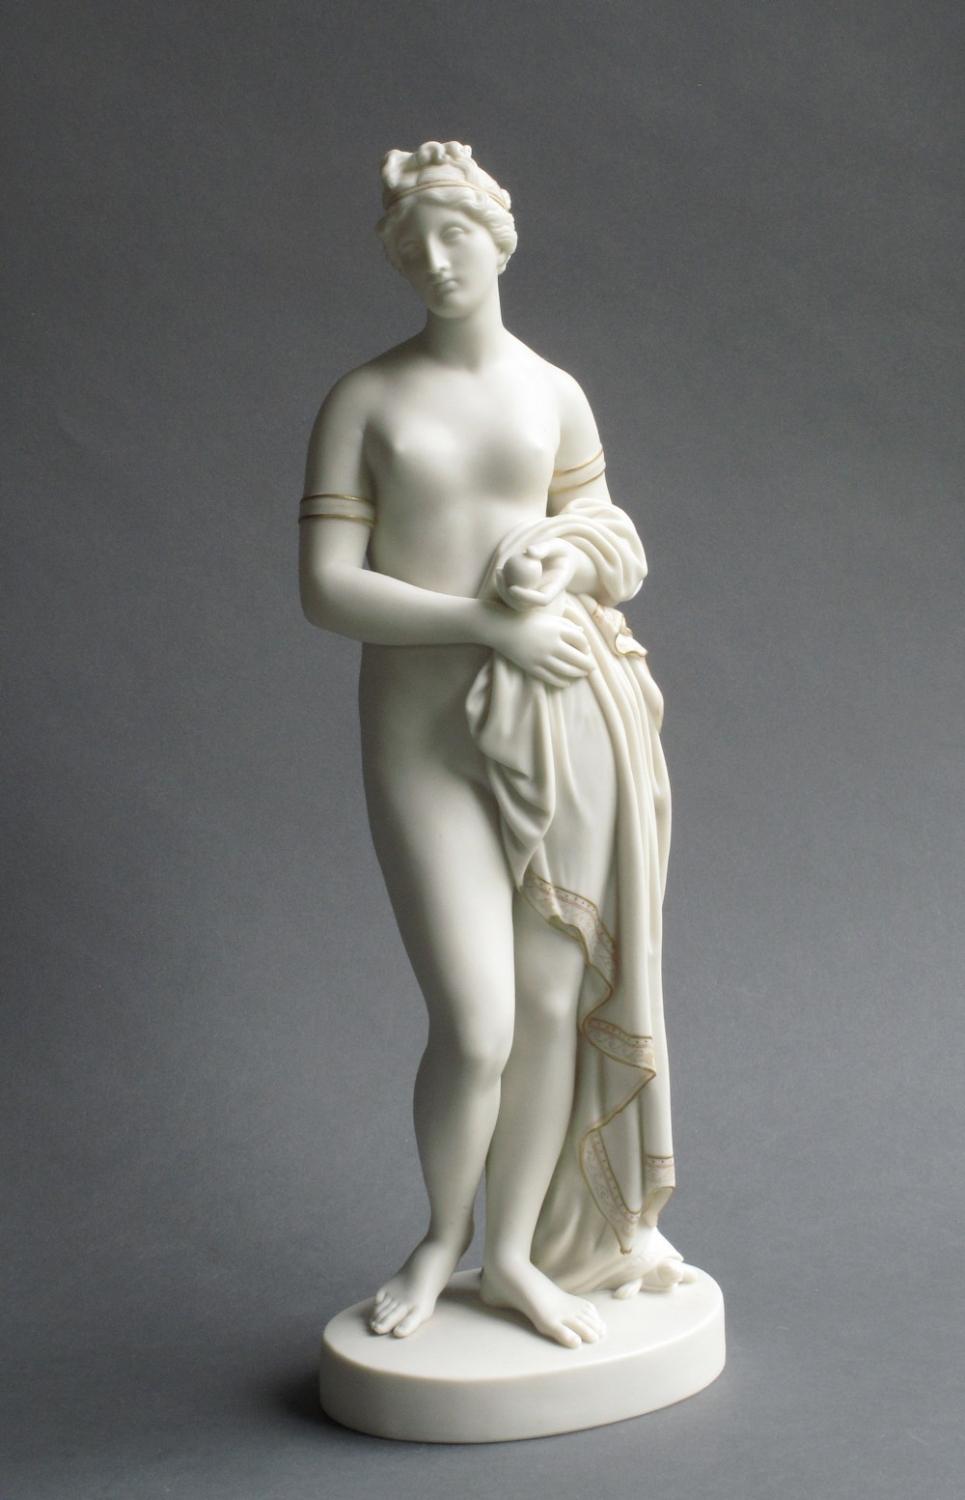 Copeland Parian figure of the Tinted Venus